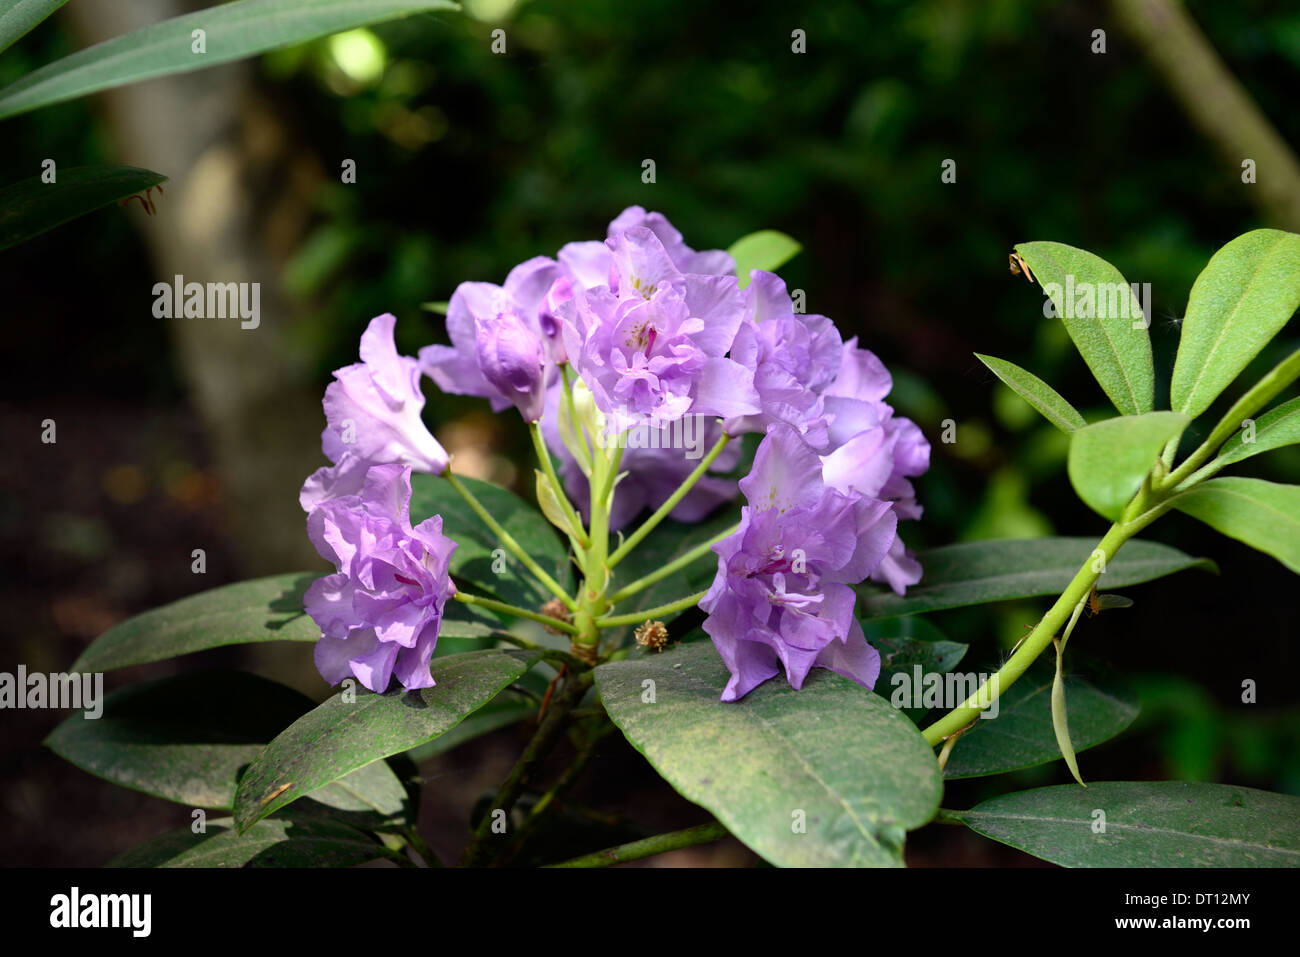 Rhododendron fastuosum flore pleno doppia viola malva fiore fiori fioritura albero arbusto pianta ericaceous Foto Stock